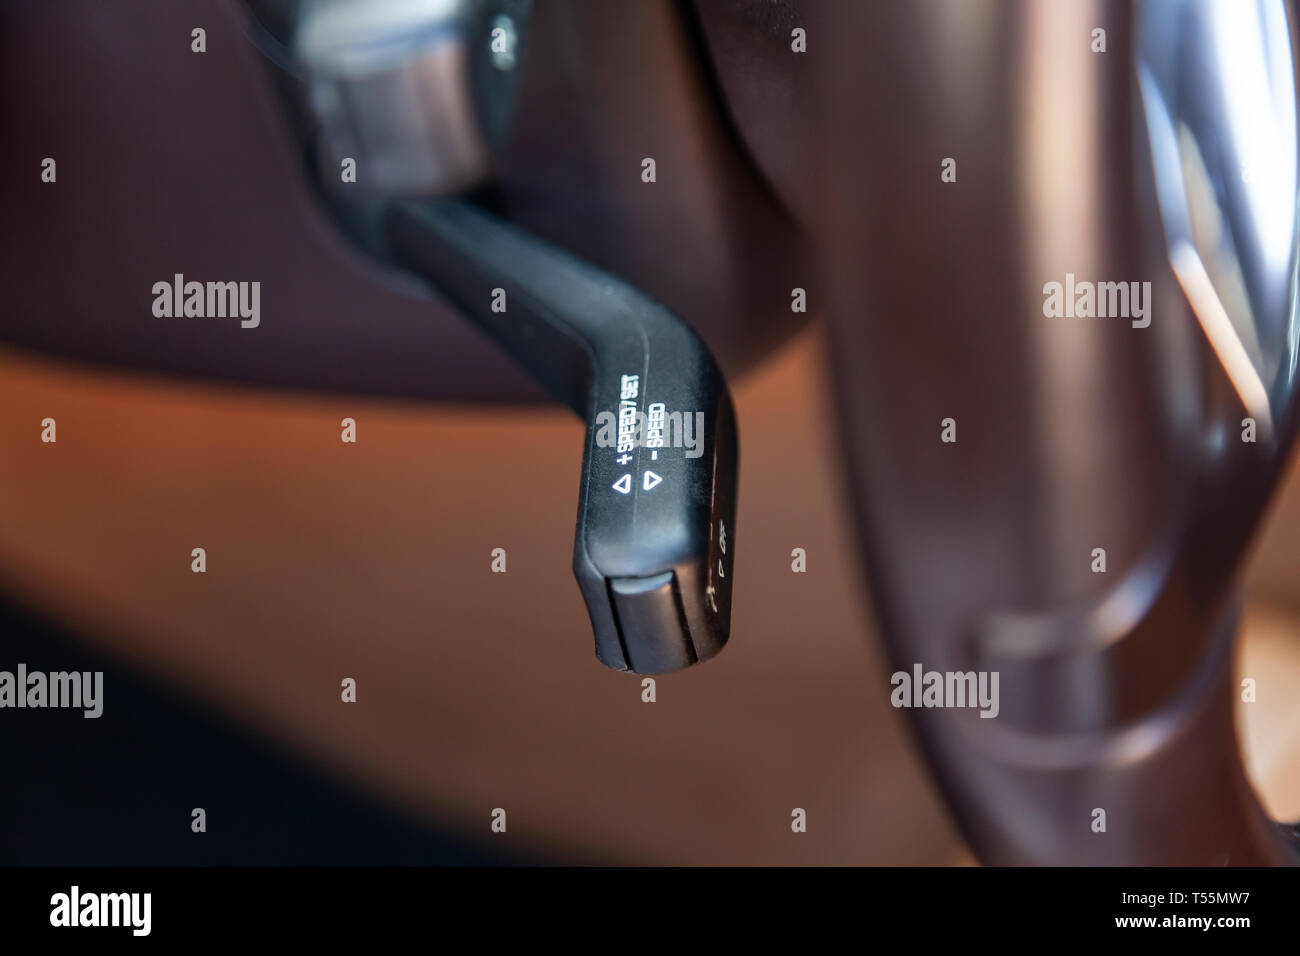 La leva del cambio per impostare l'automatico regolatore velocità  all'interno dell'auto close-up si trova vicino al volante in nero con segni  bianchi e il simbolo Foto stock - Alamy